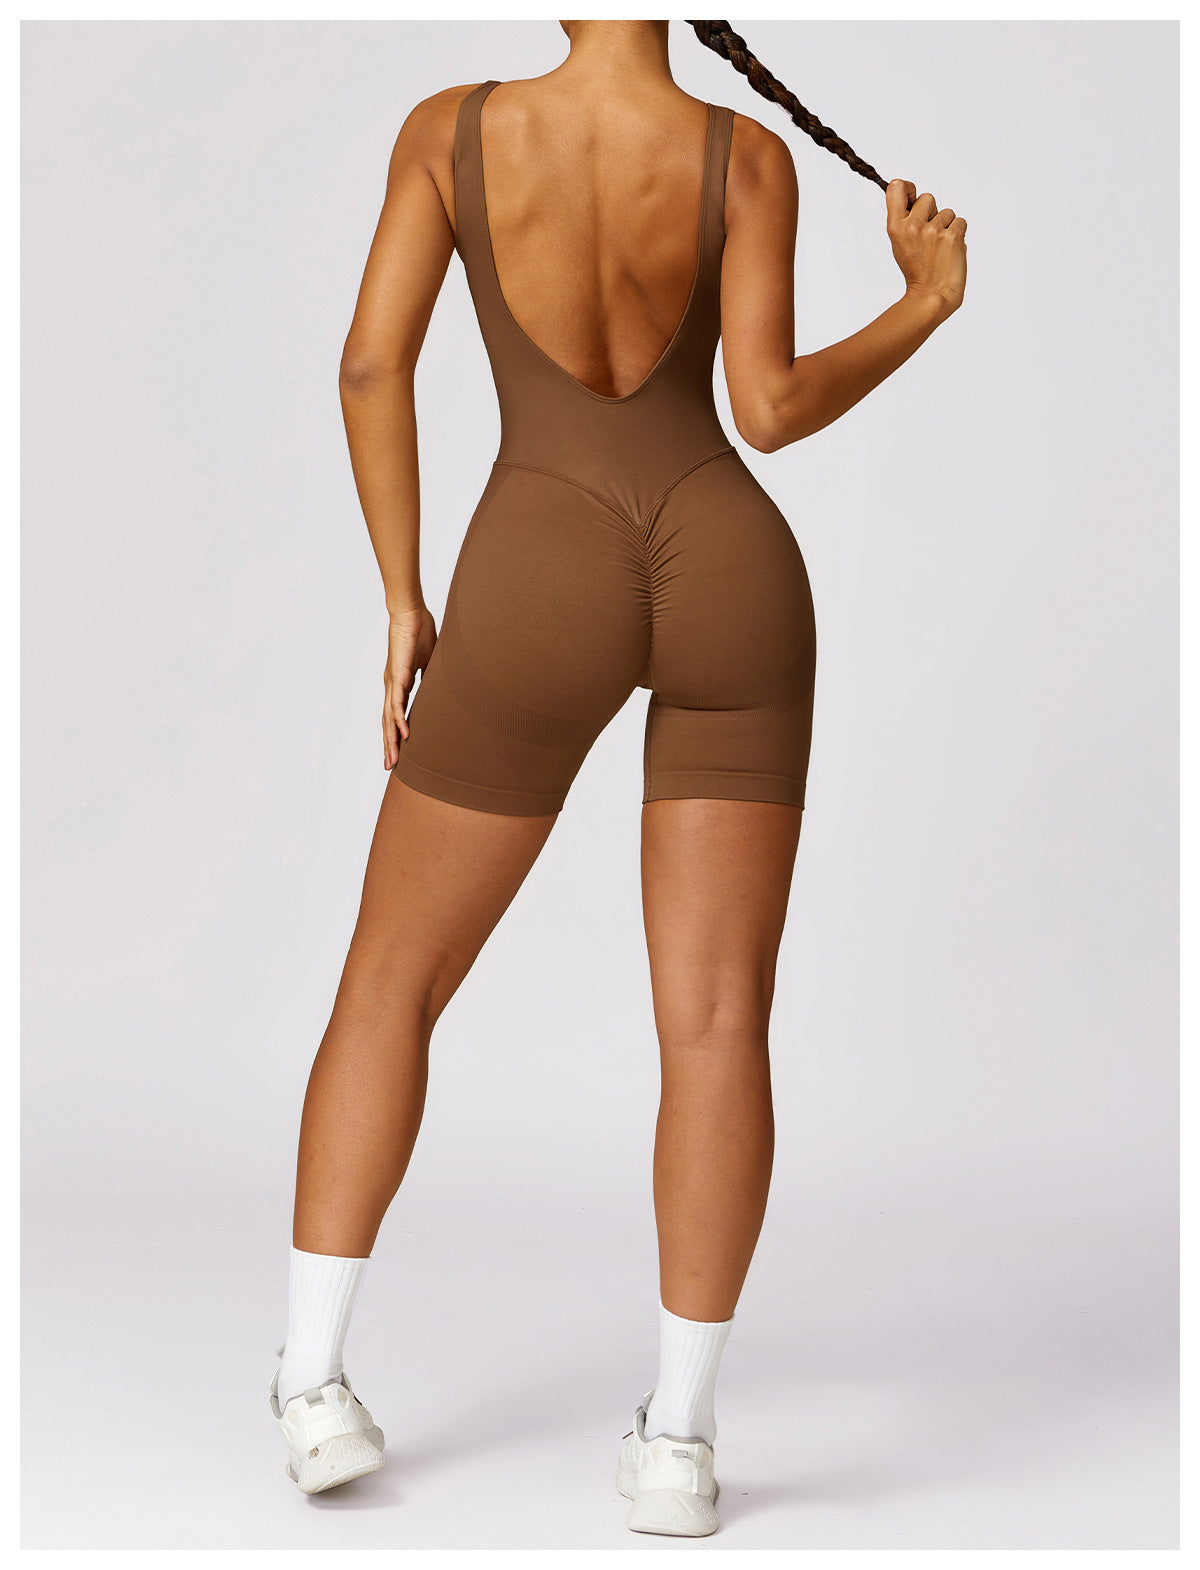 Clarisse™ - Yoga Bodysuit Sportswear